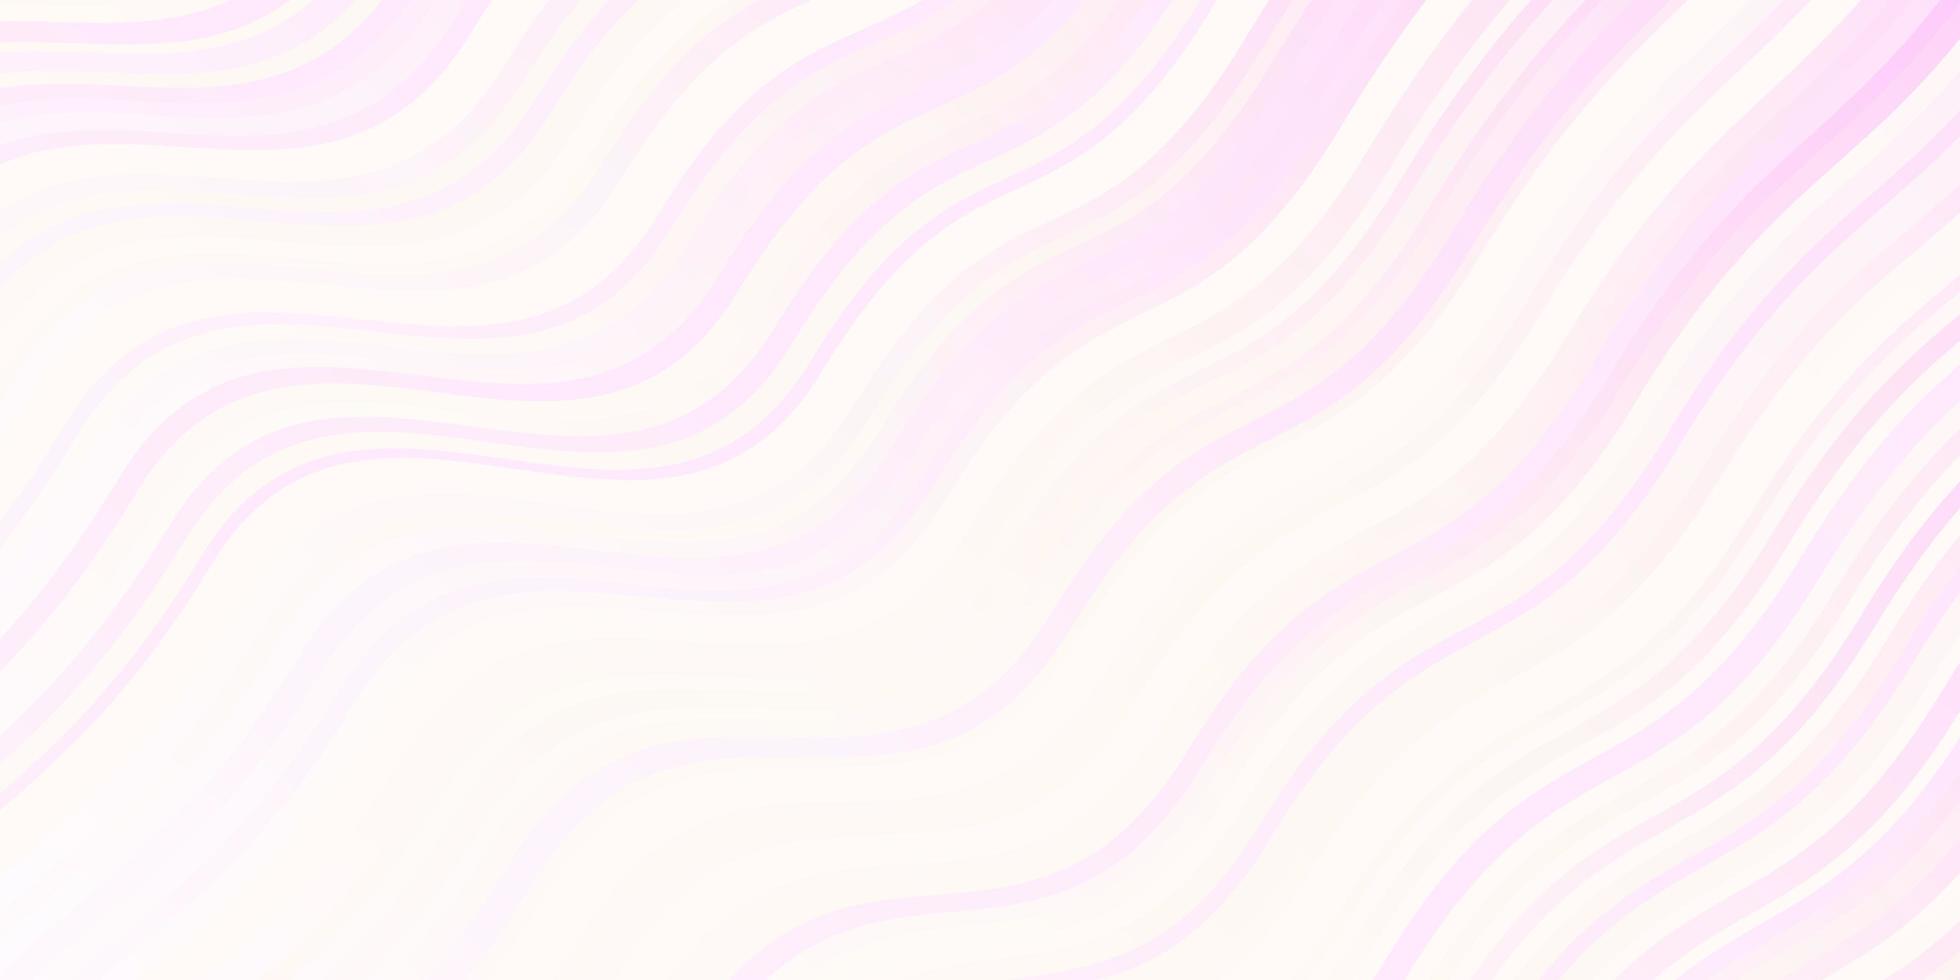 sfondo vettoriale rosa chiaro, giallo con linee piegate.